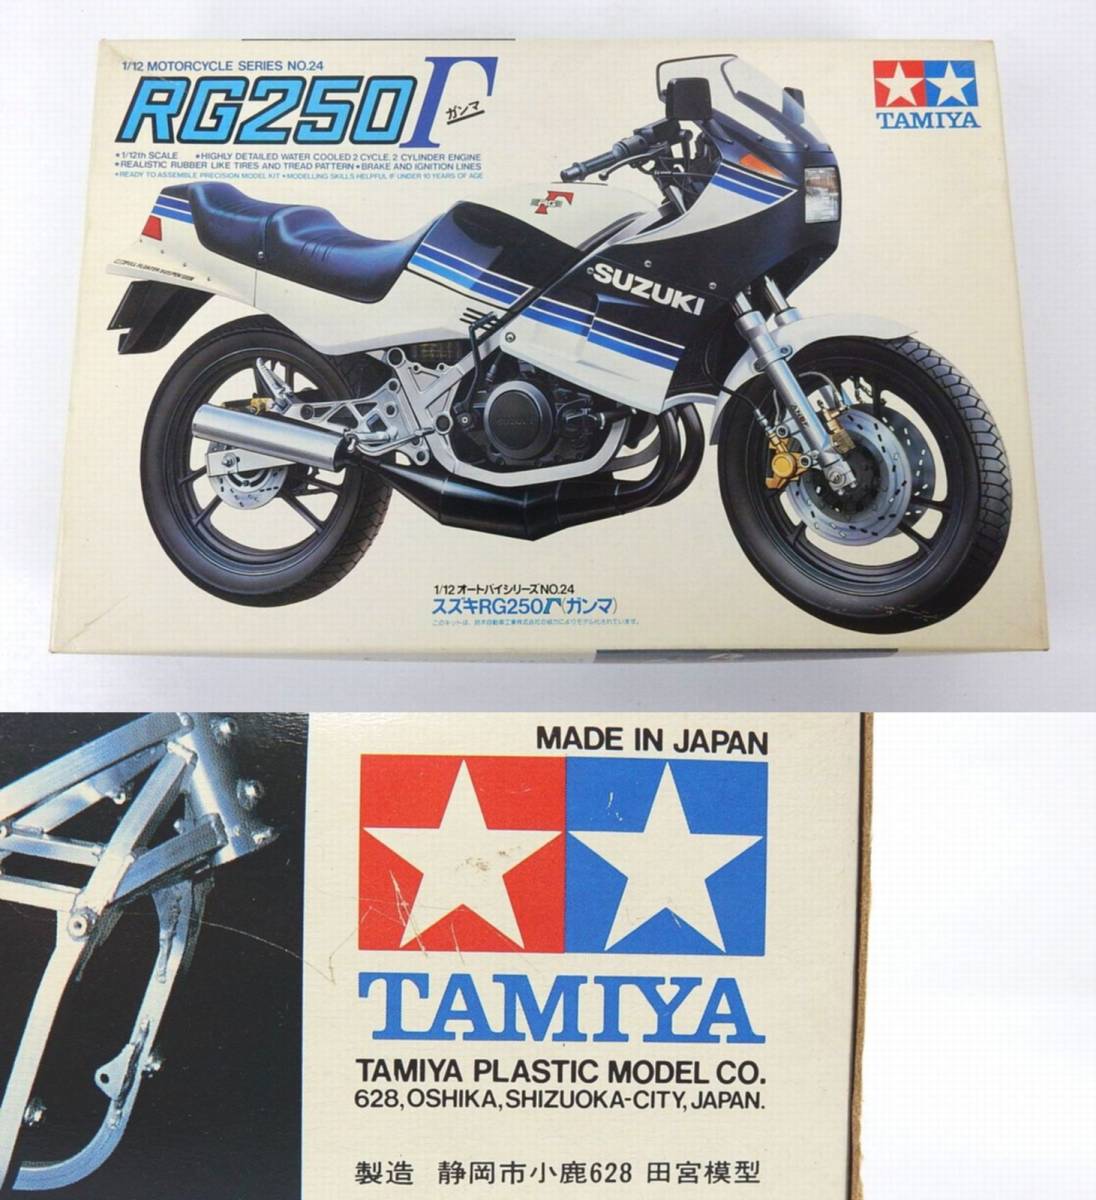 [TAMIYA] Tamiya 1/12 мотоцикл серии NO.24 SUZUKI RG250Γ( Gamma ) маленький олень производства не собран б/у товар JUNK обращение текущее состояние доставка совершенно возвращенние товара не возможно .!